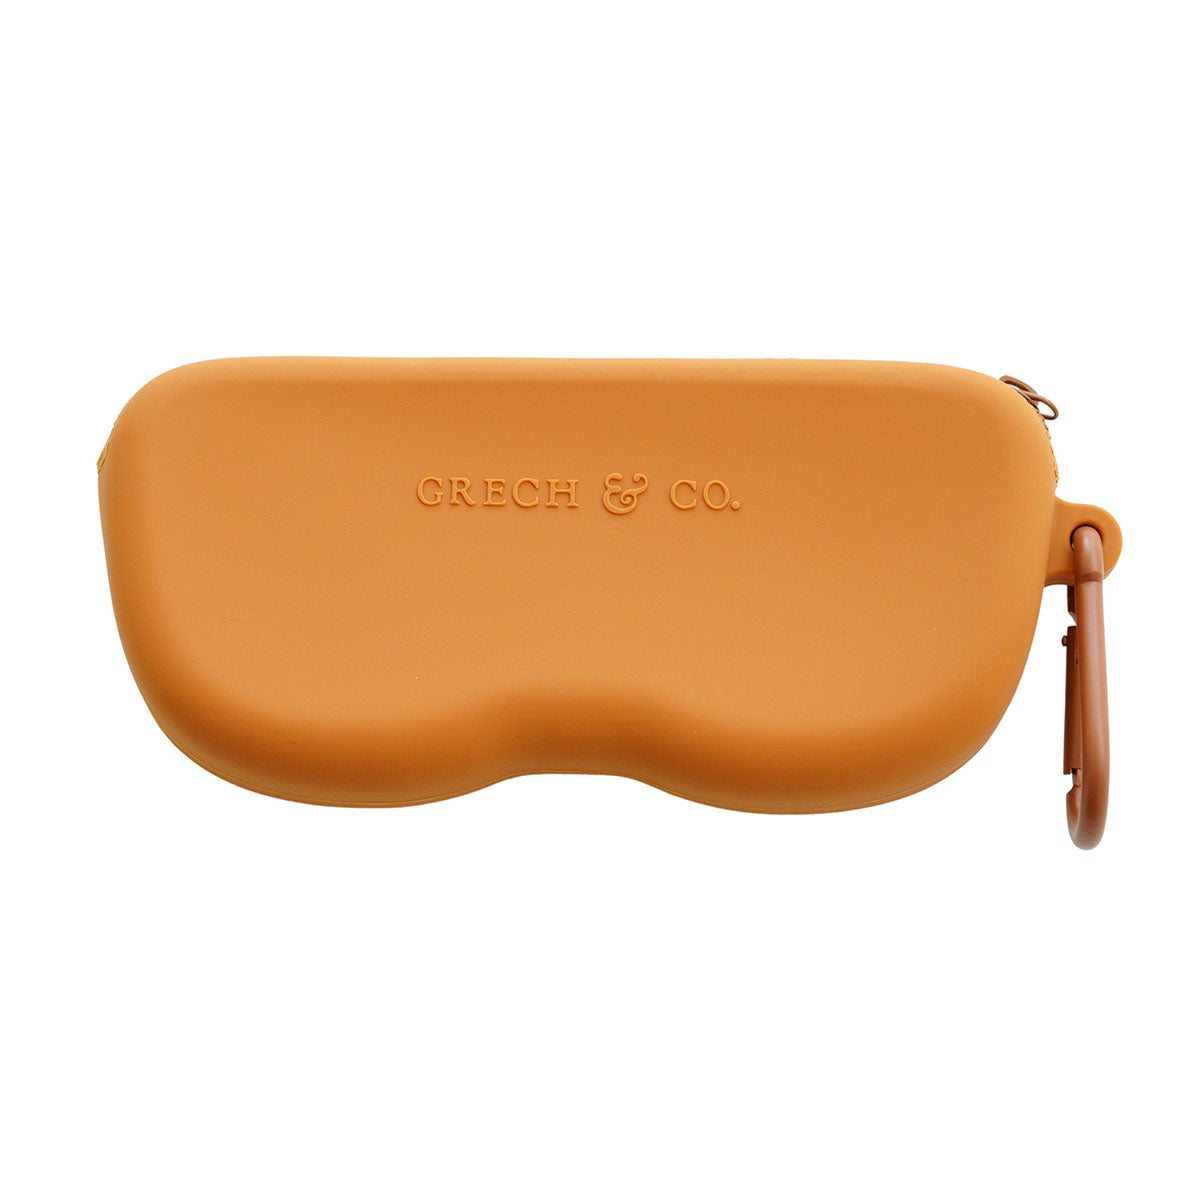 De Grech & co. case voor zonnebril spice, for mommy and me is een schitterende beschermhoes voor zonnebrillen, ontworpen om je favoriete zonnebril veilig en beschermd te houden tijdens het reizen en opslaan. VanZus